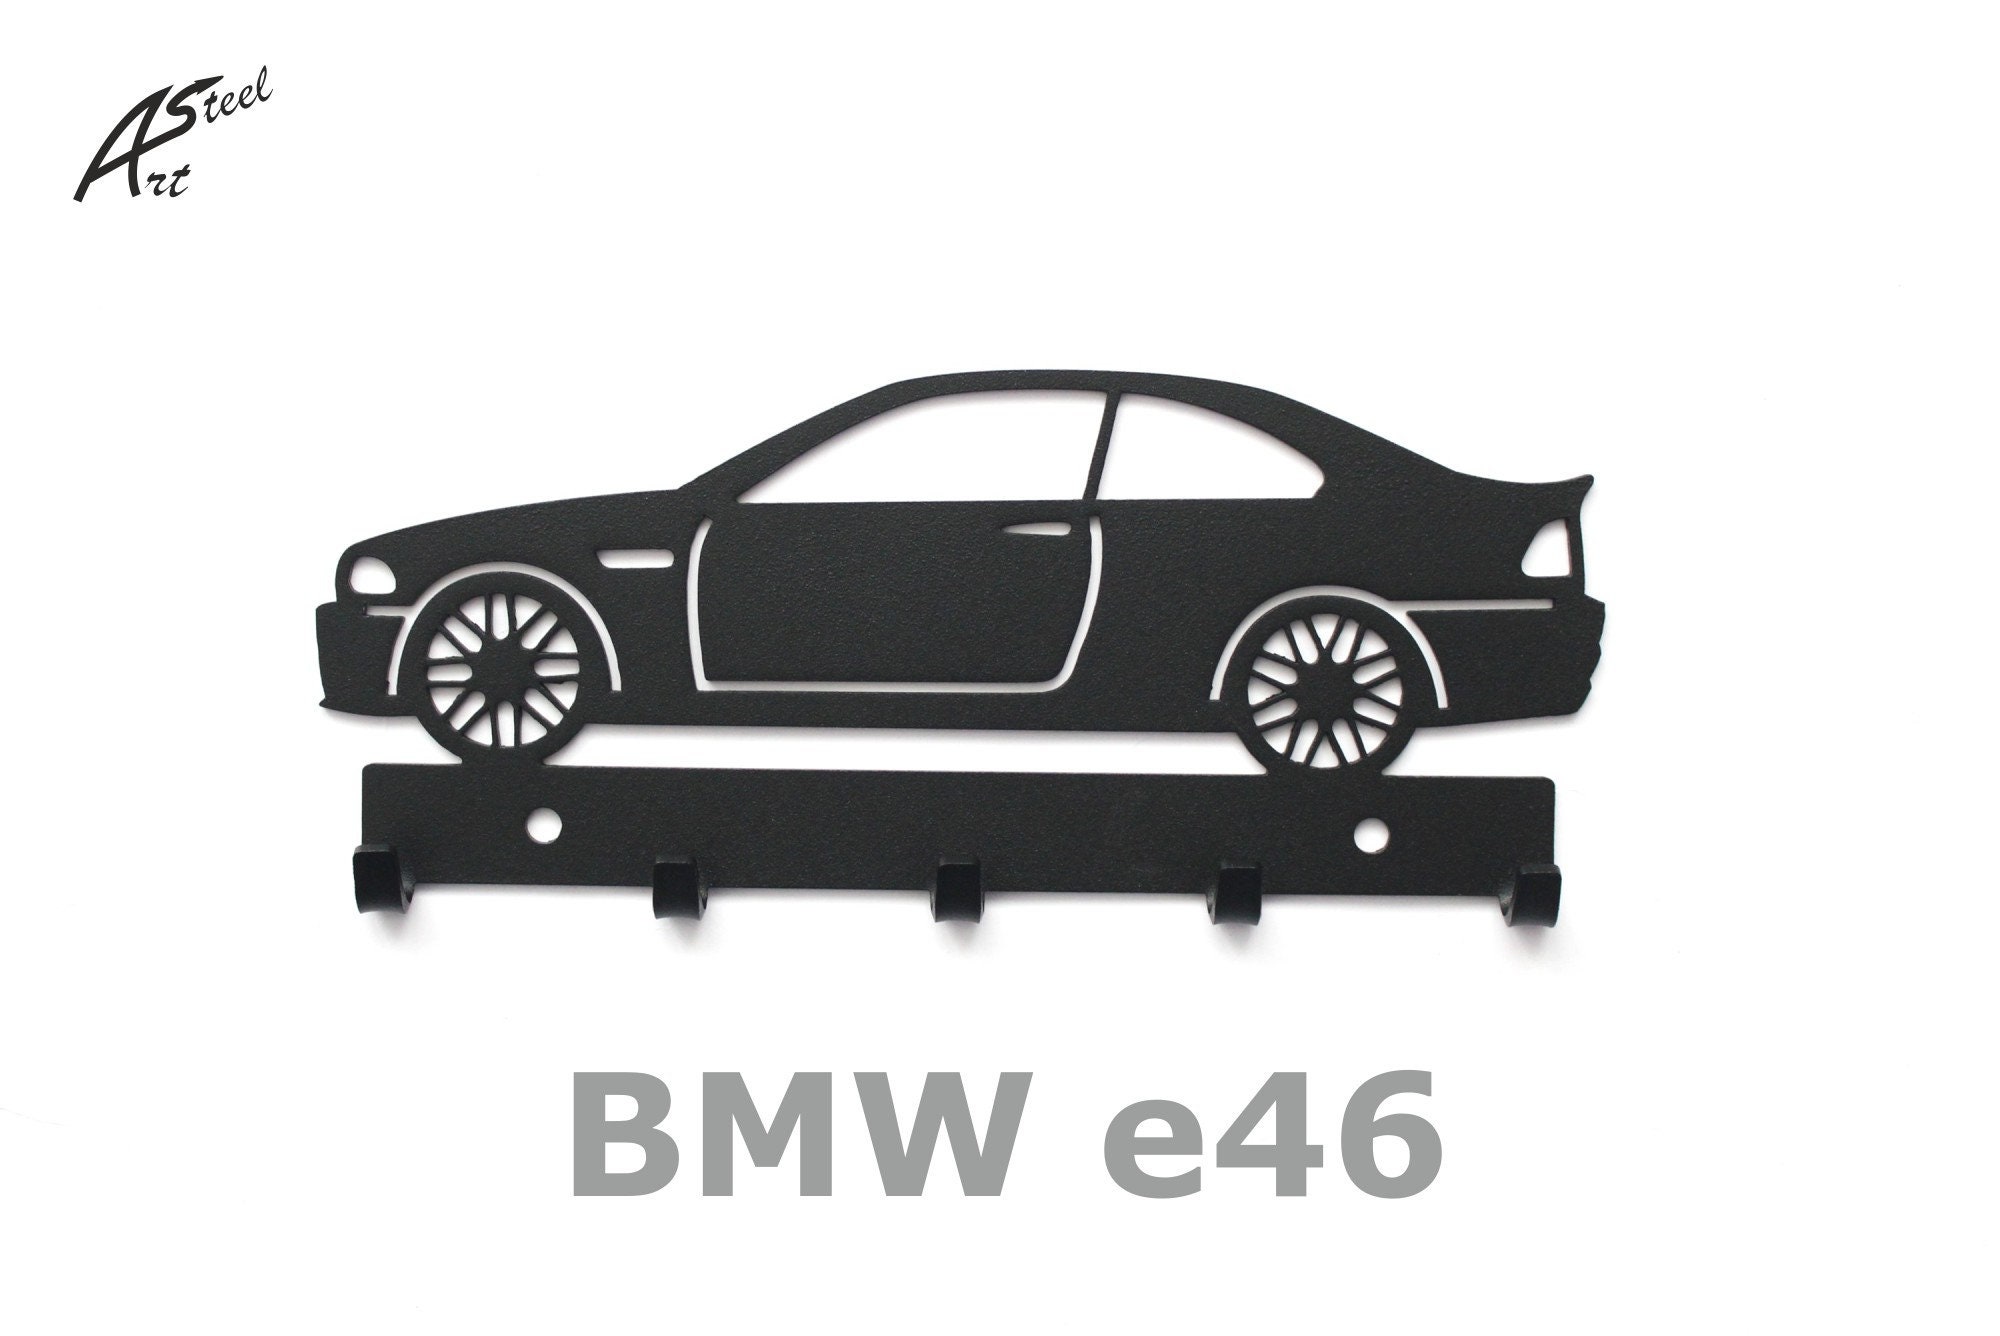 BMW e46 coupe wieszak na klucze auto samochód pomysł Etsy